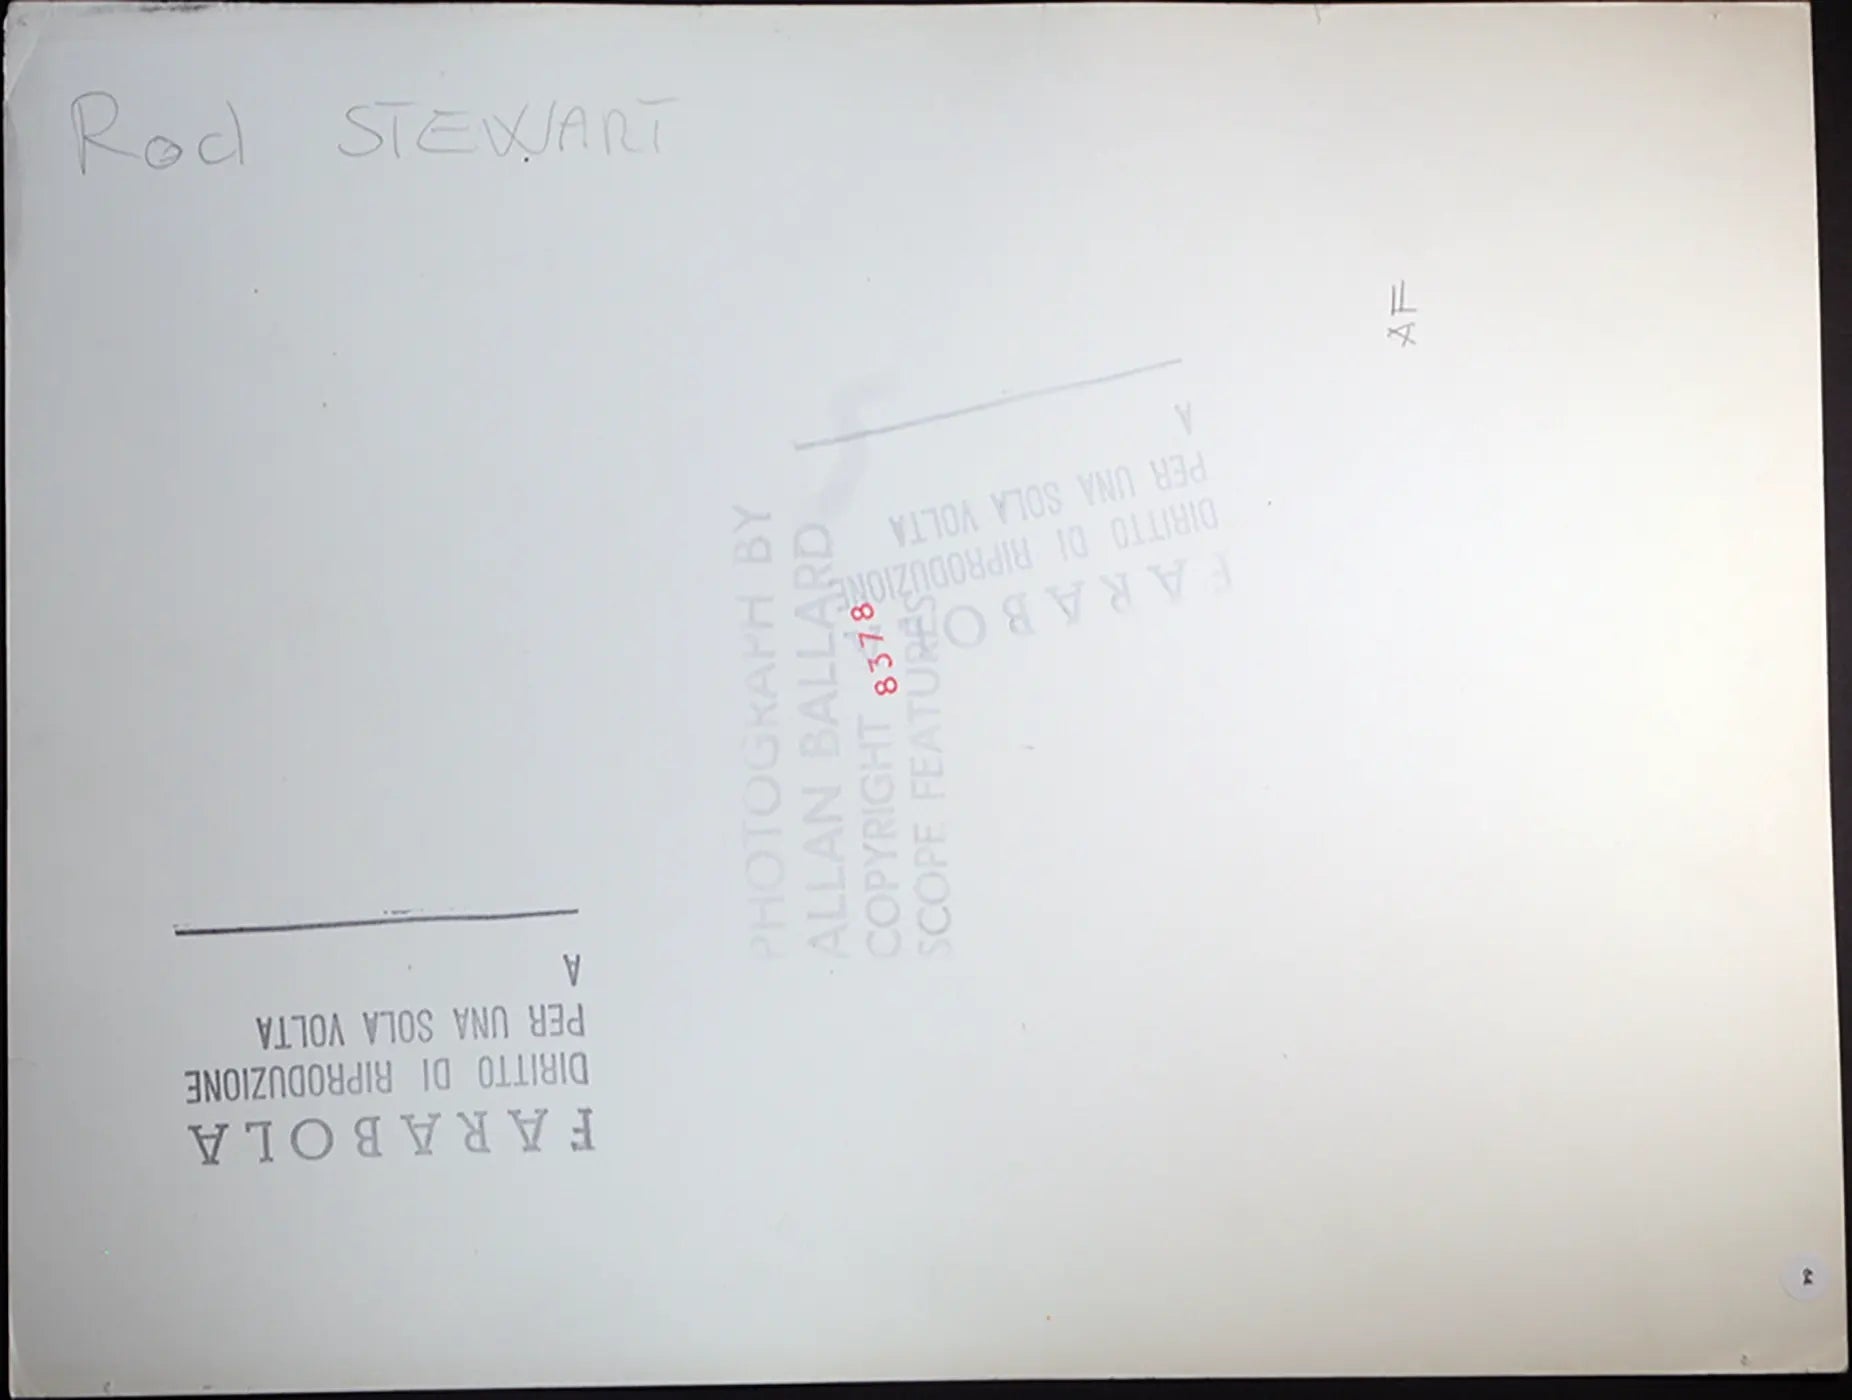 Rod Stewart si fa un massaggio Ft 64 - Stampa 27x37 cm - Farabola Stampa ai sali d'argento